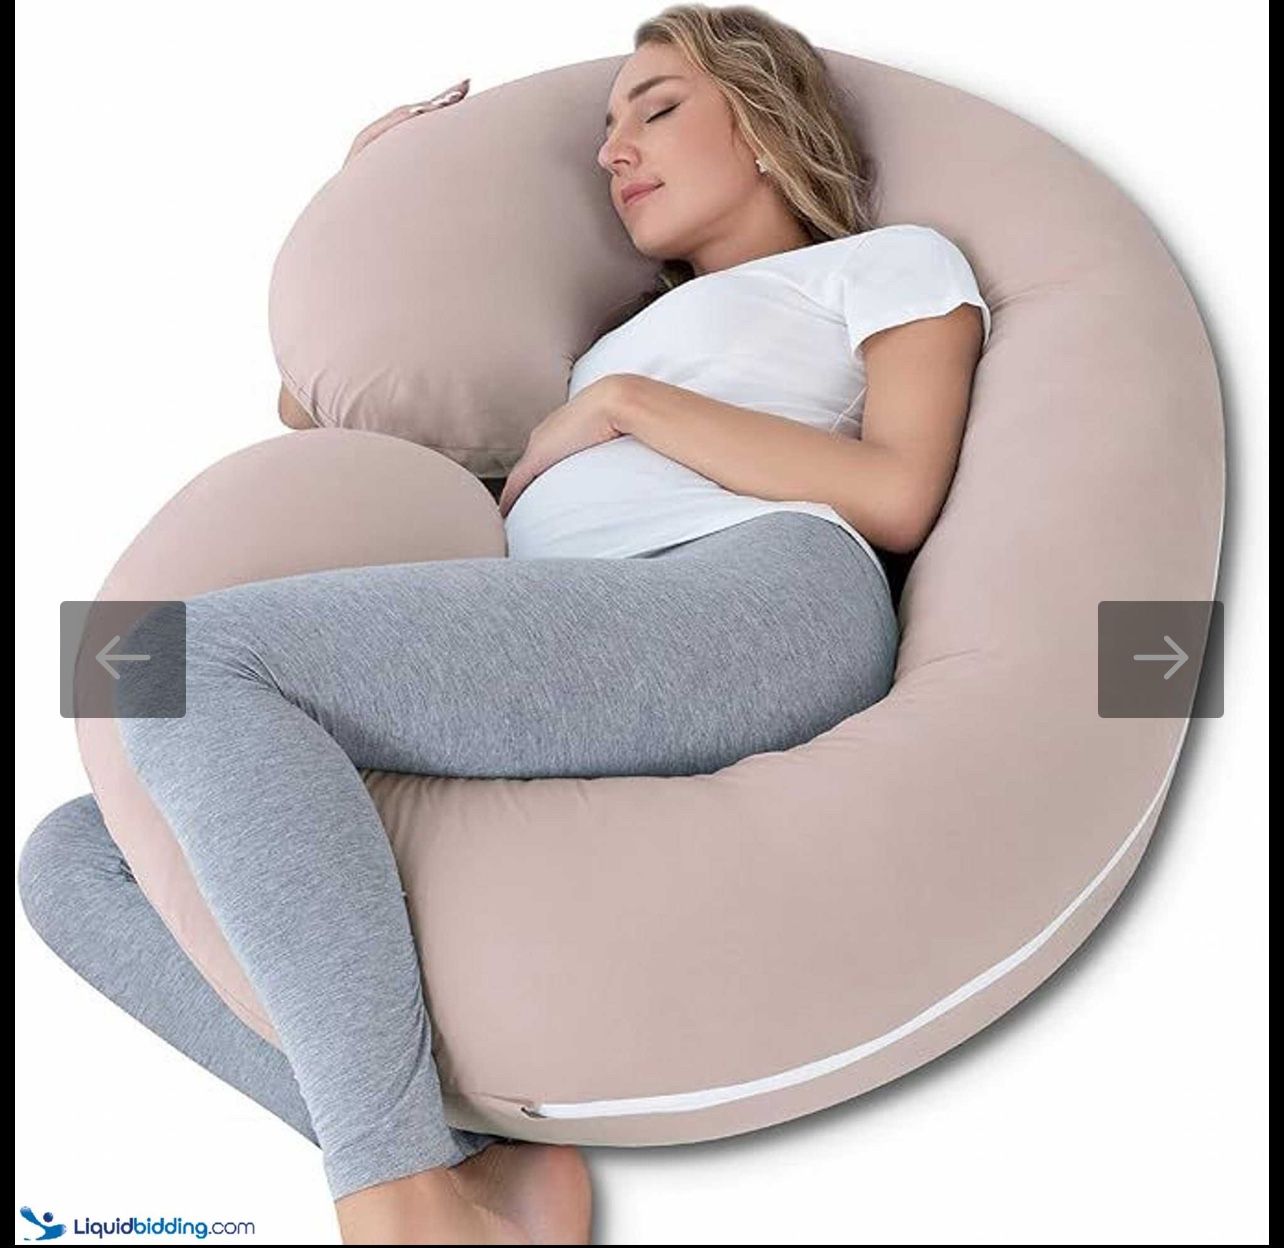 Pregnancy Pillow, Maternity Body Pillow